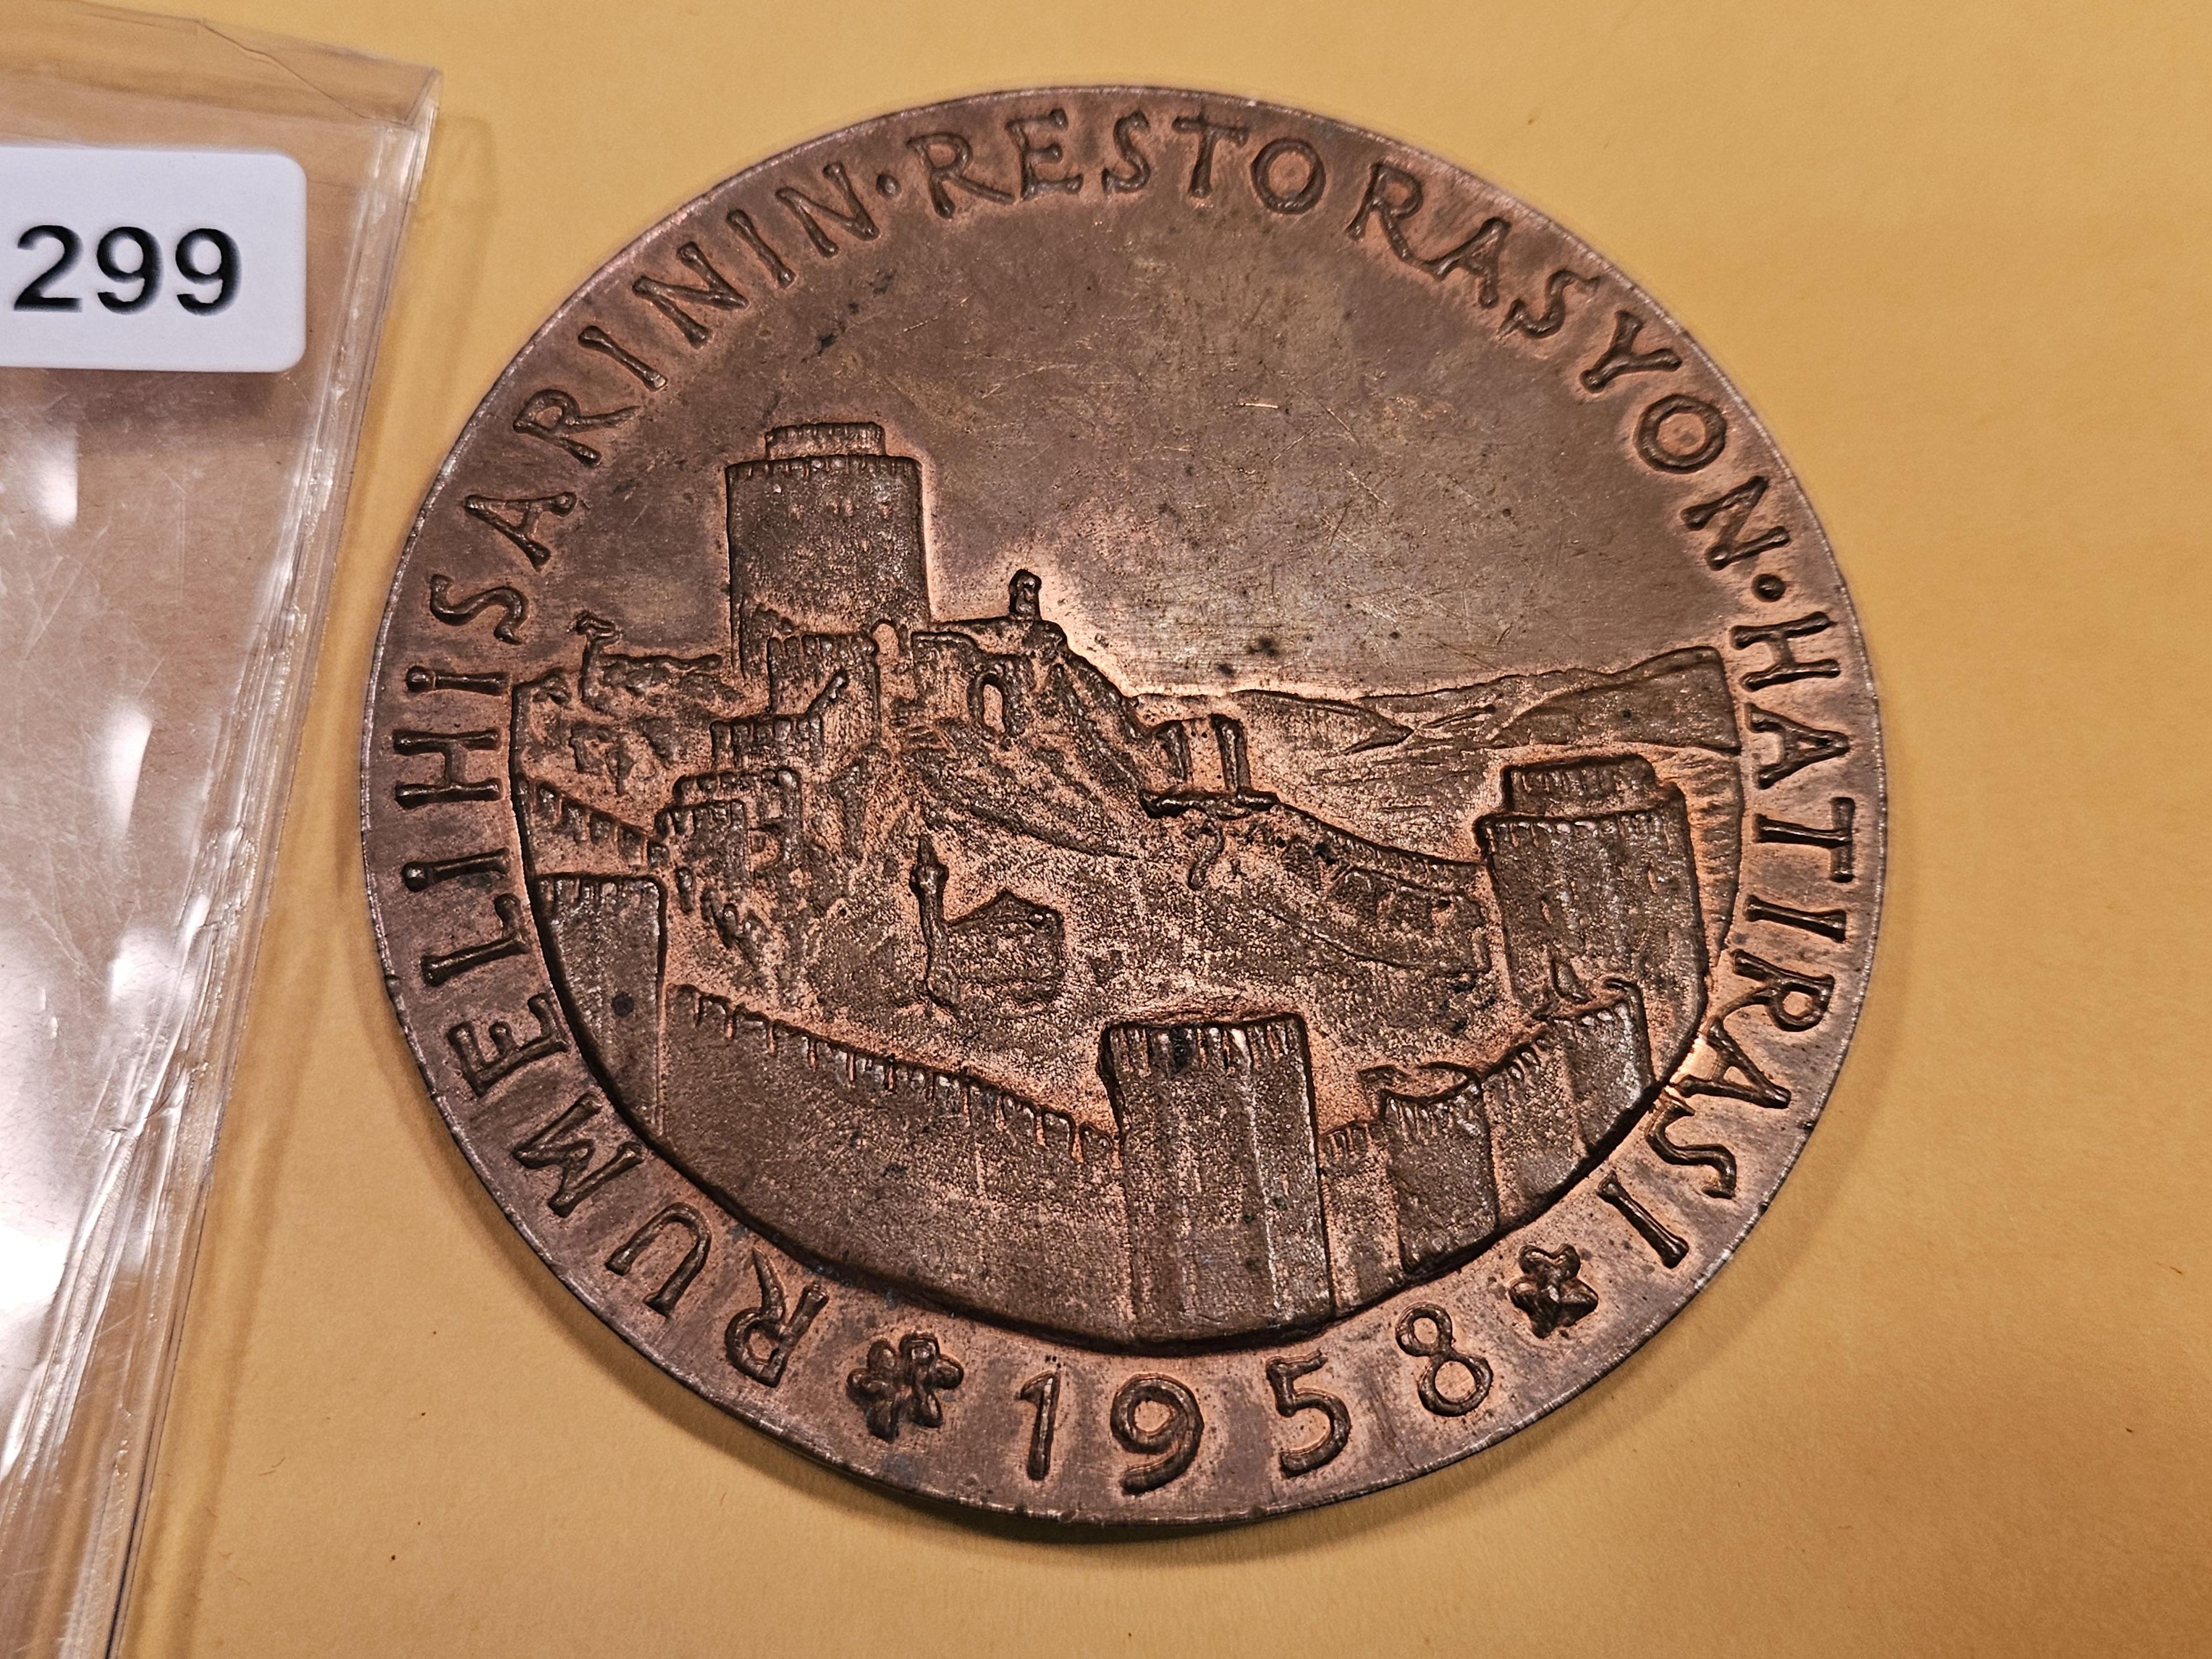 Large 1958 Medal